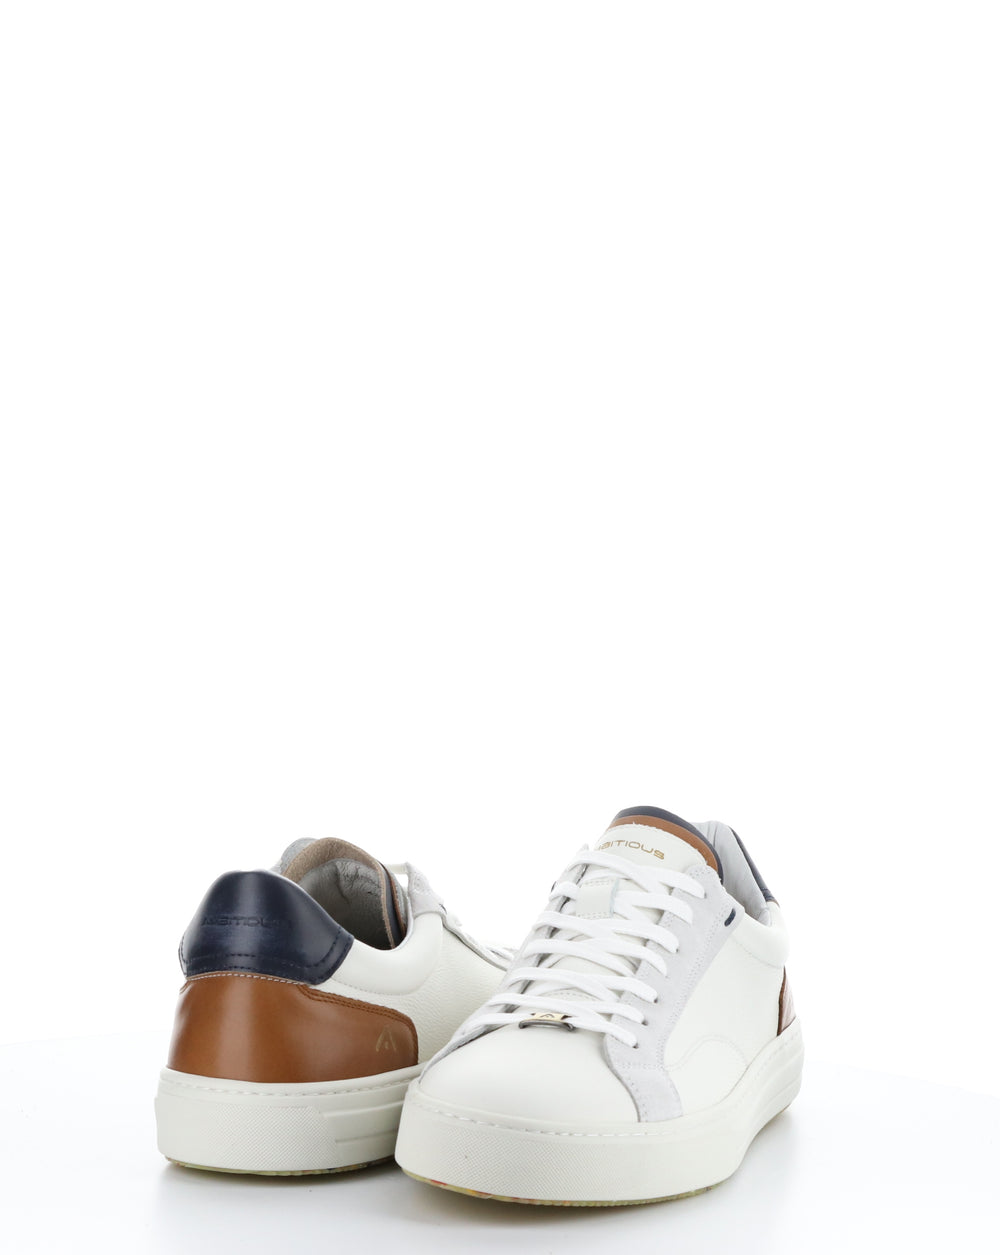 11218 OFF WHITE/COGNAC Lace-up Shoes